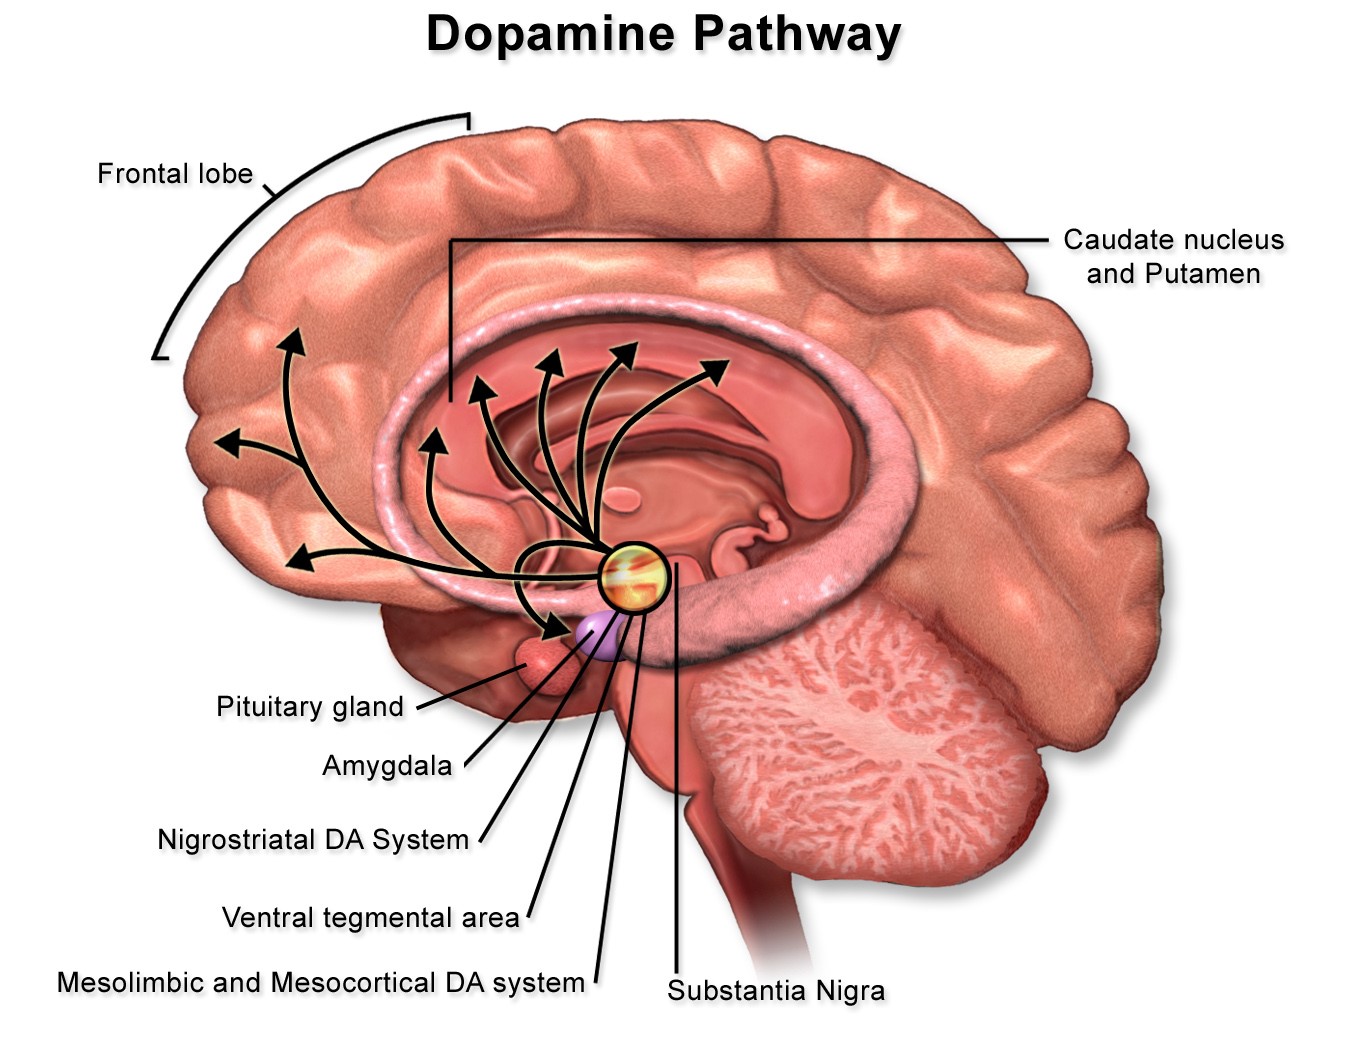 Dopamine pathway